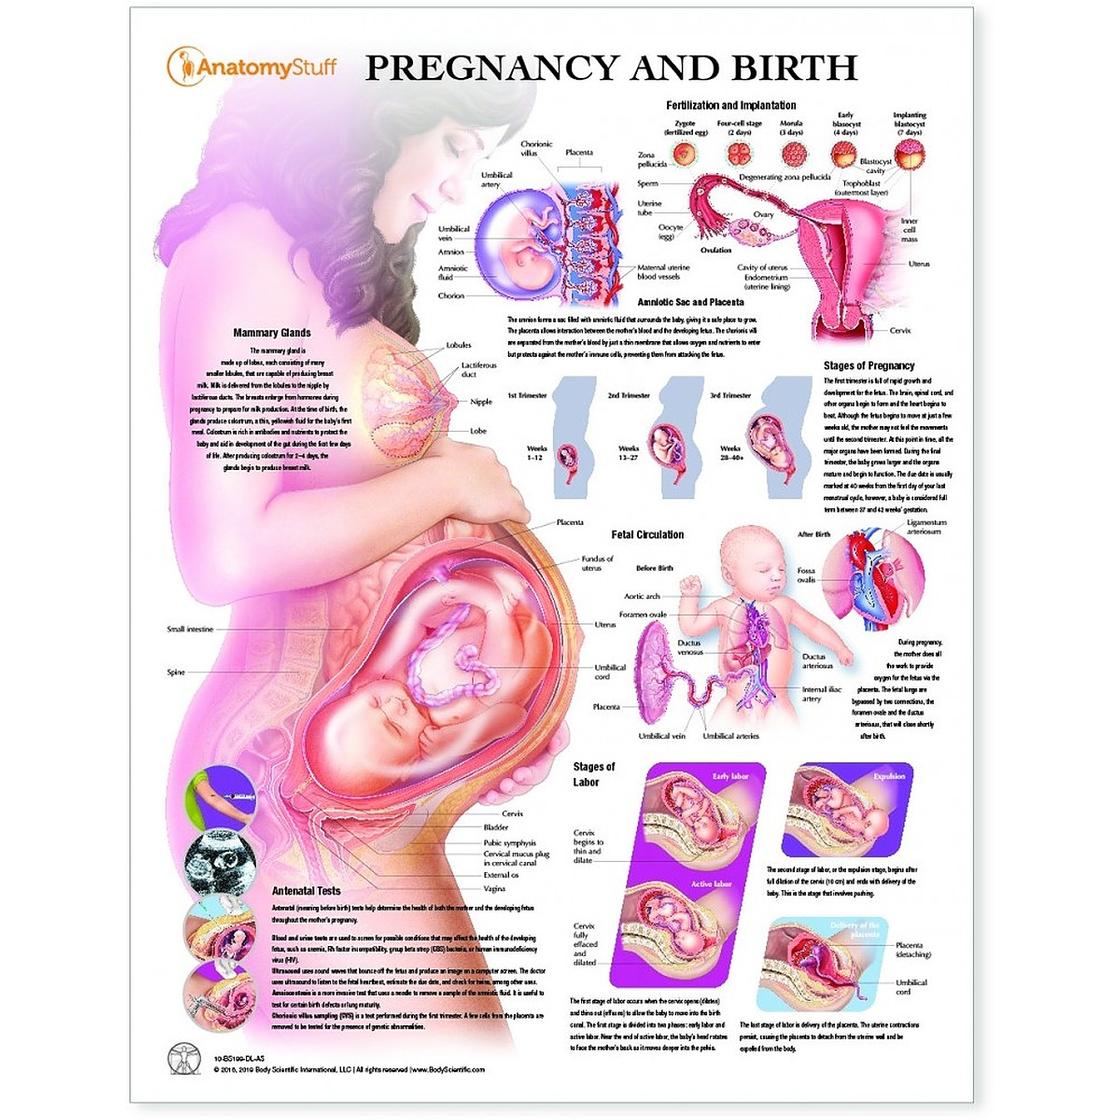 34 неделя беременности можно. Положение ребенка в животе на 33 неделе беременности. Плод в животе матери схема. Положение органов на 32 неделе беременности. Эмбрион 34 недели беременности вес плода.